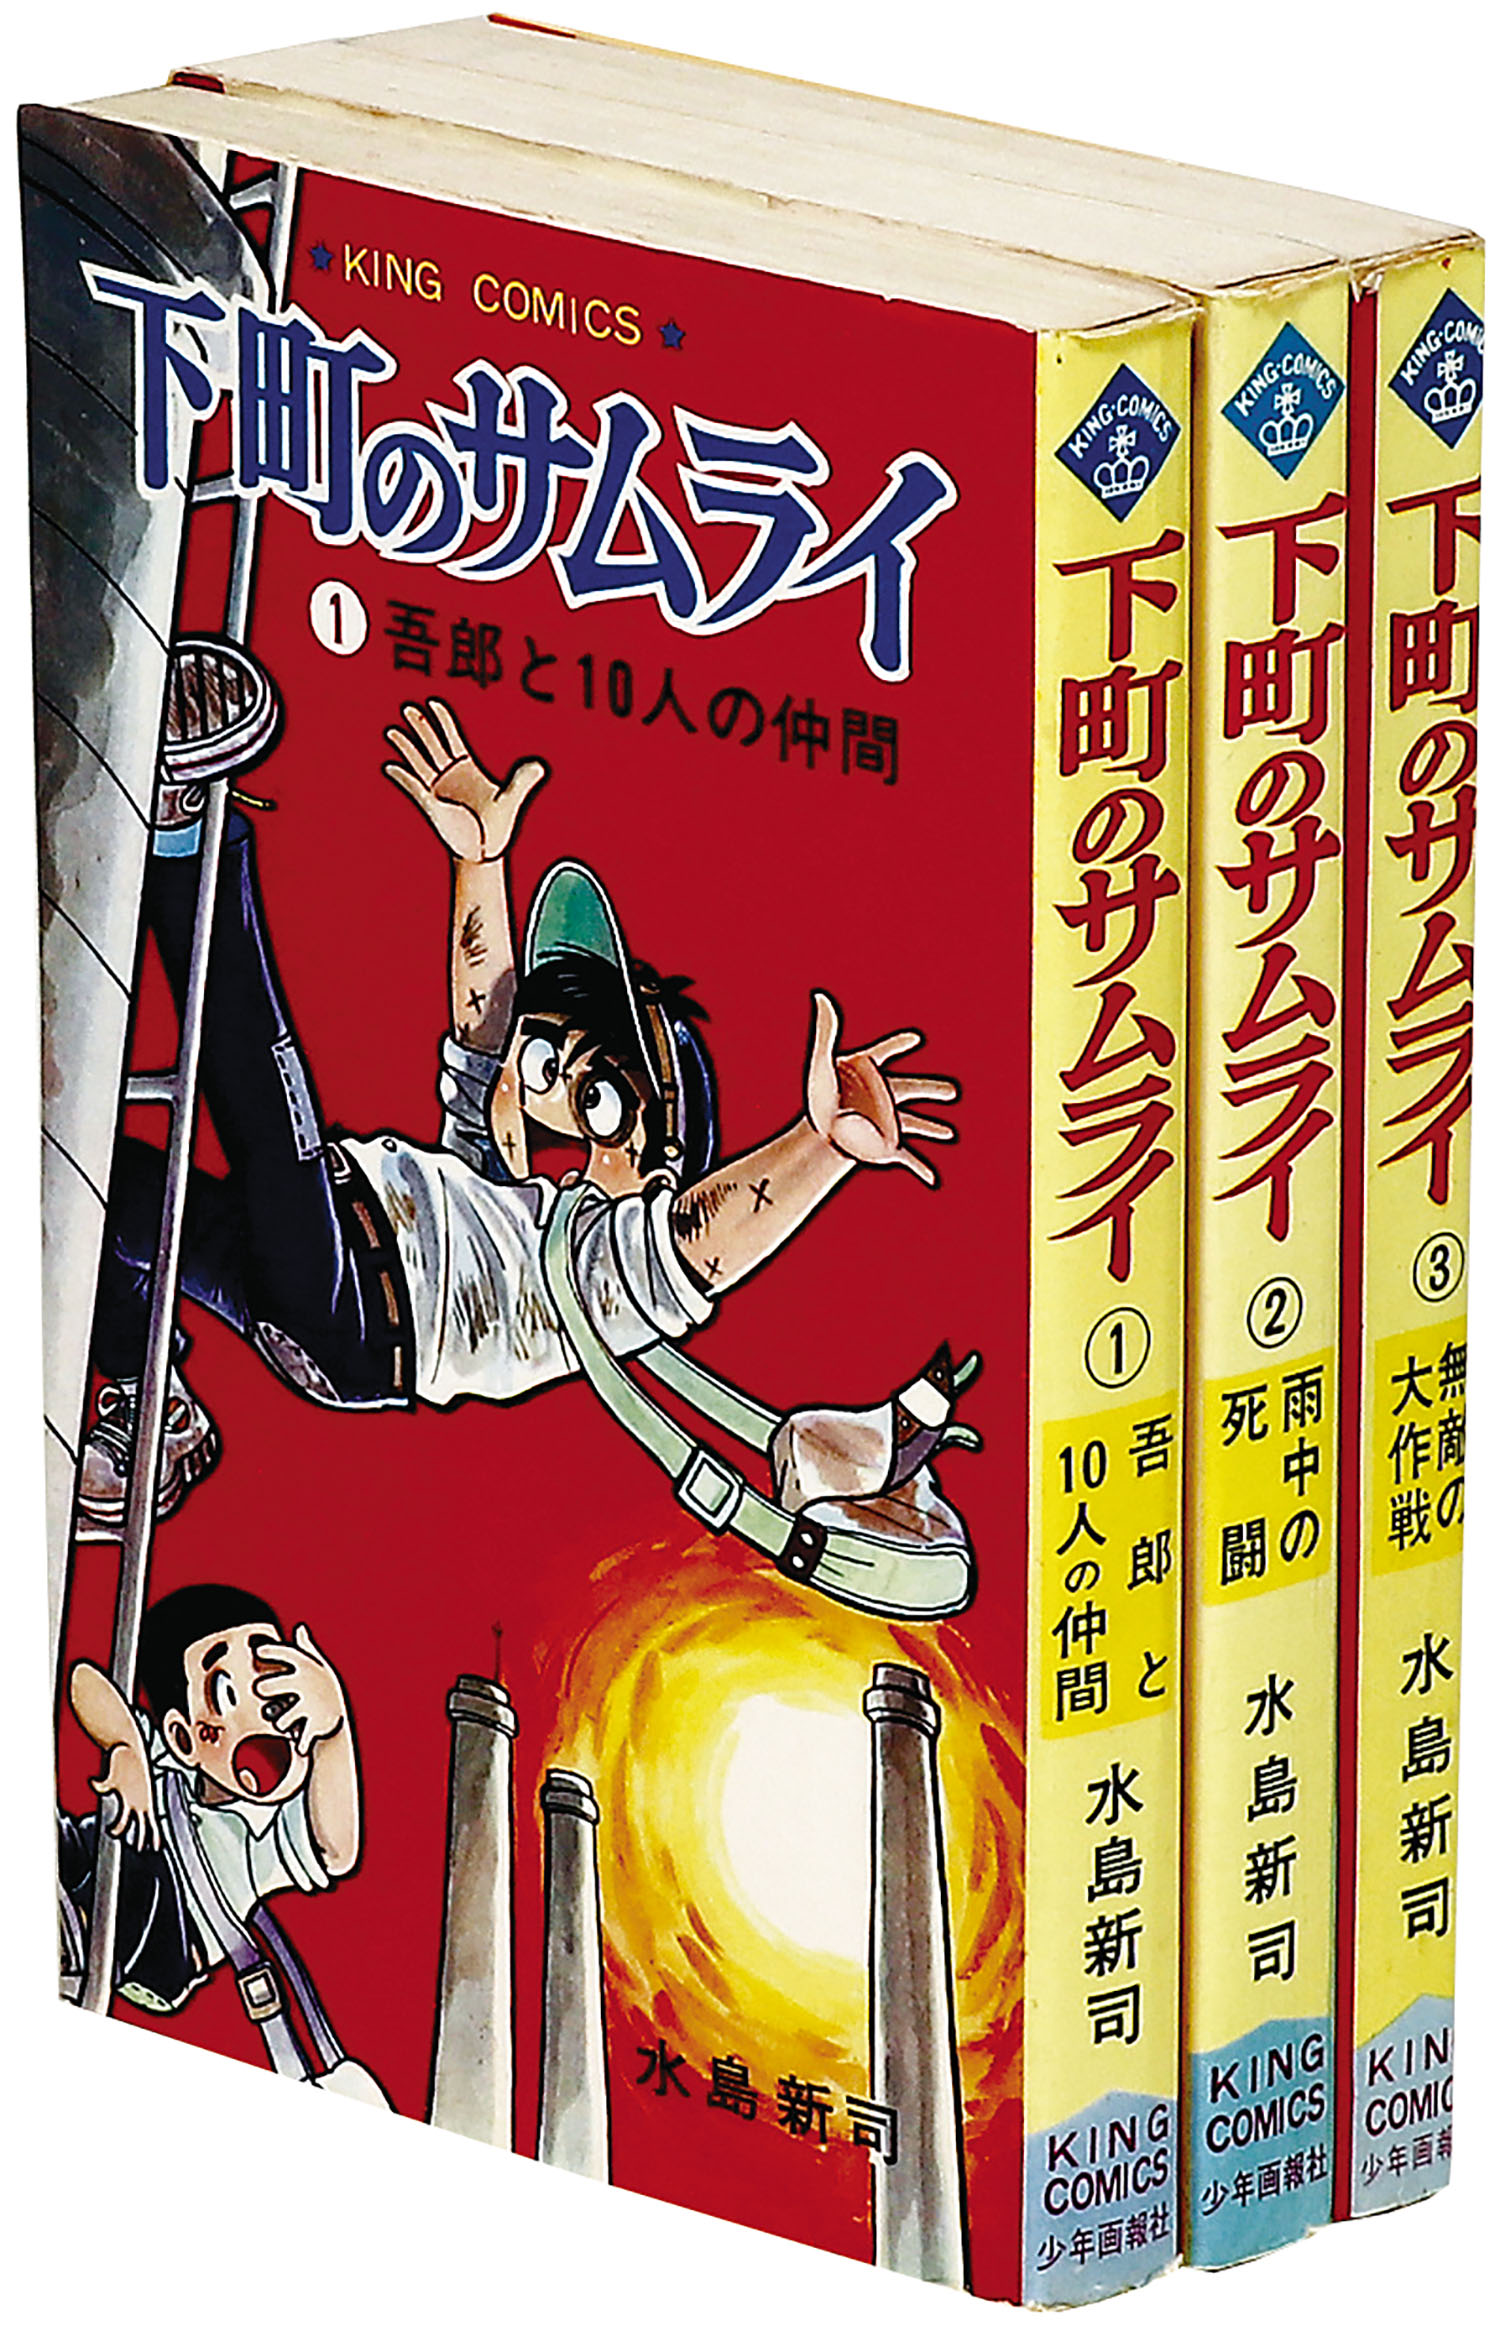 キングコミックス/水島新司「下町のサムライ全3巻初版セット」